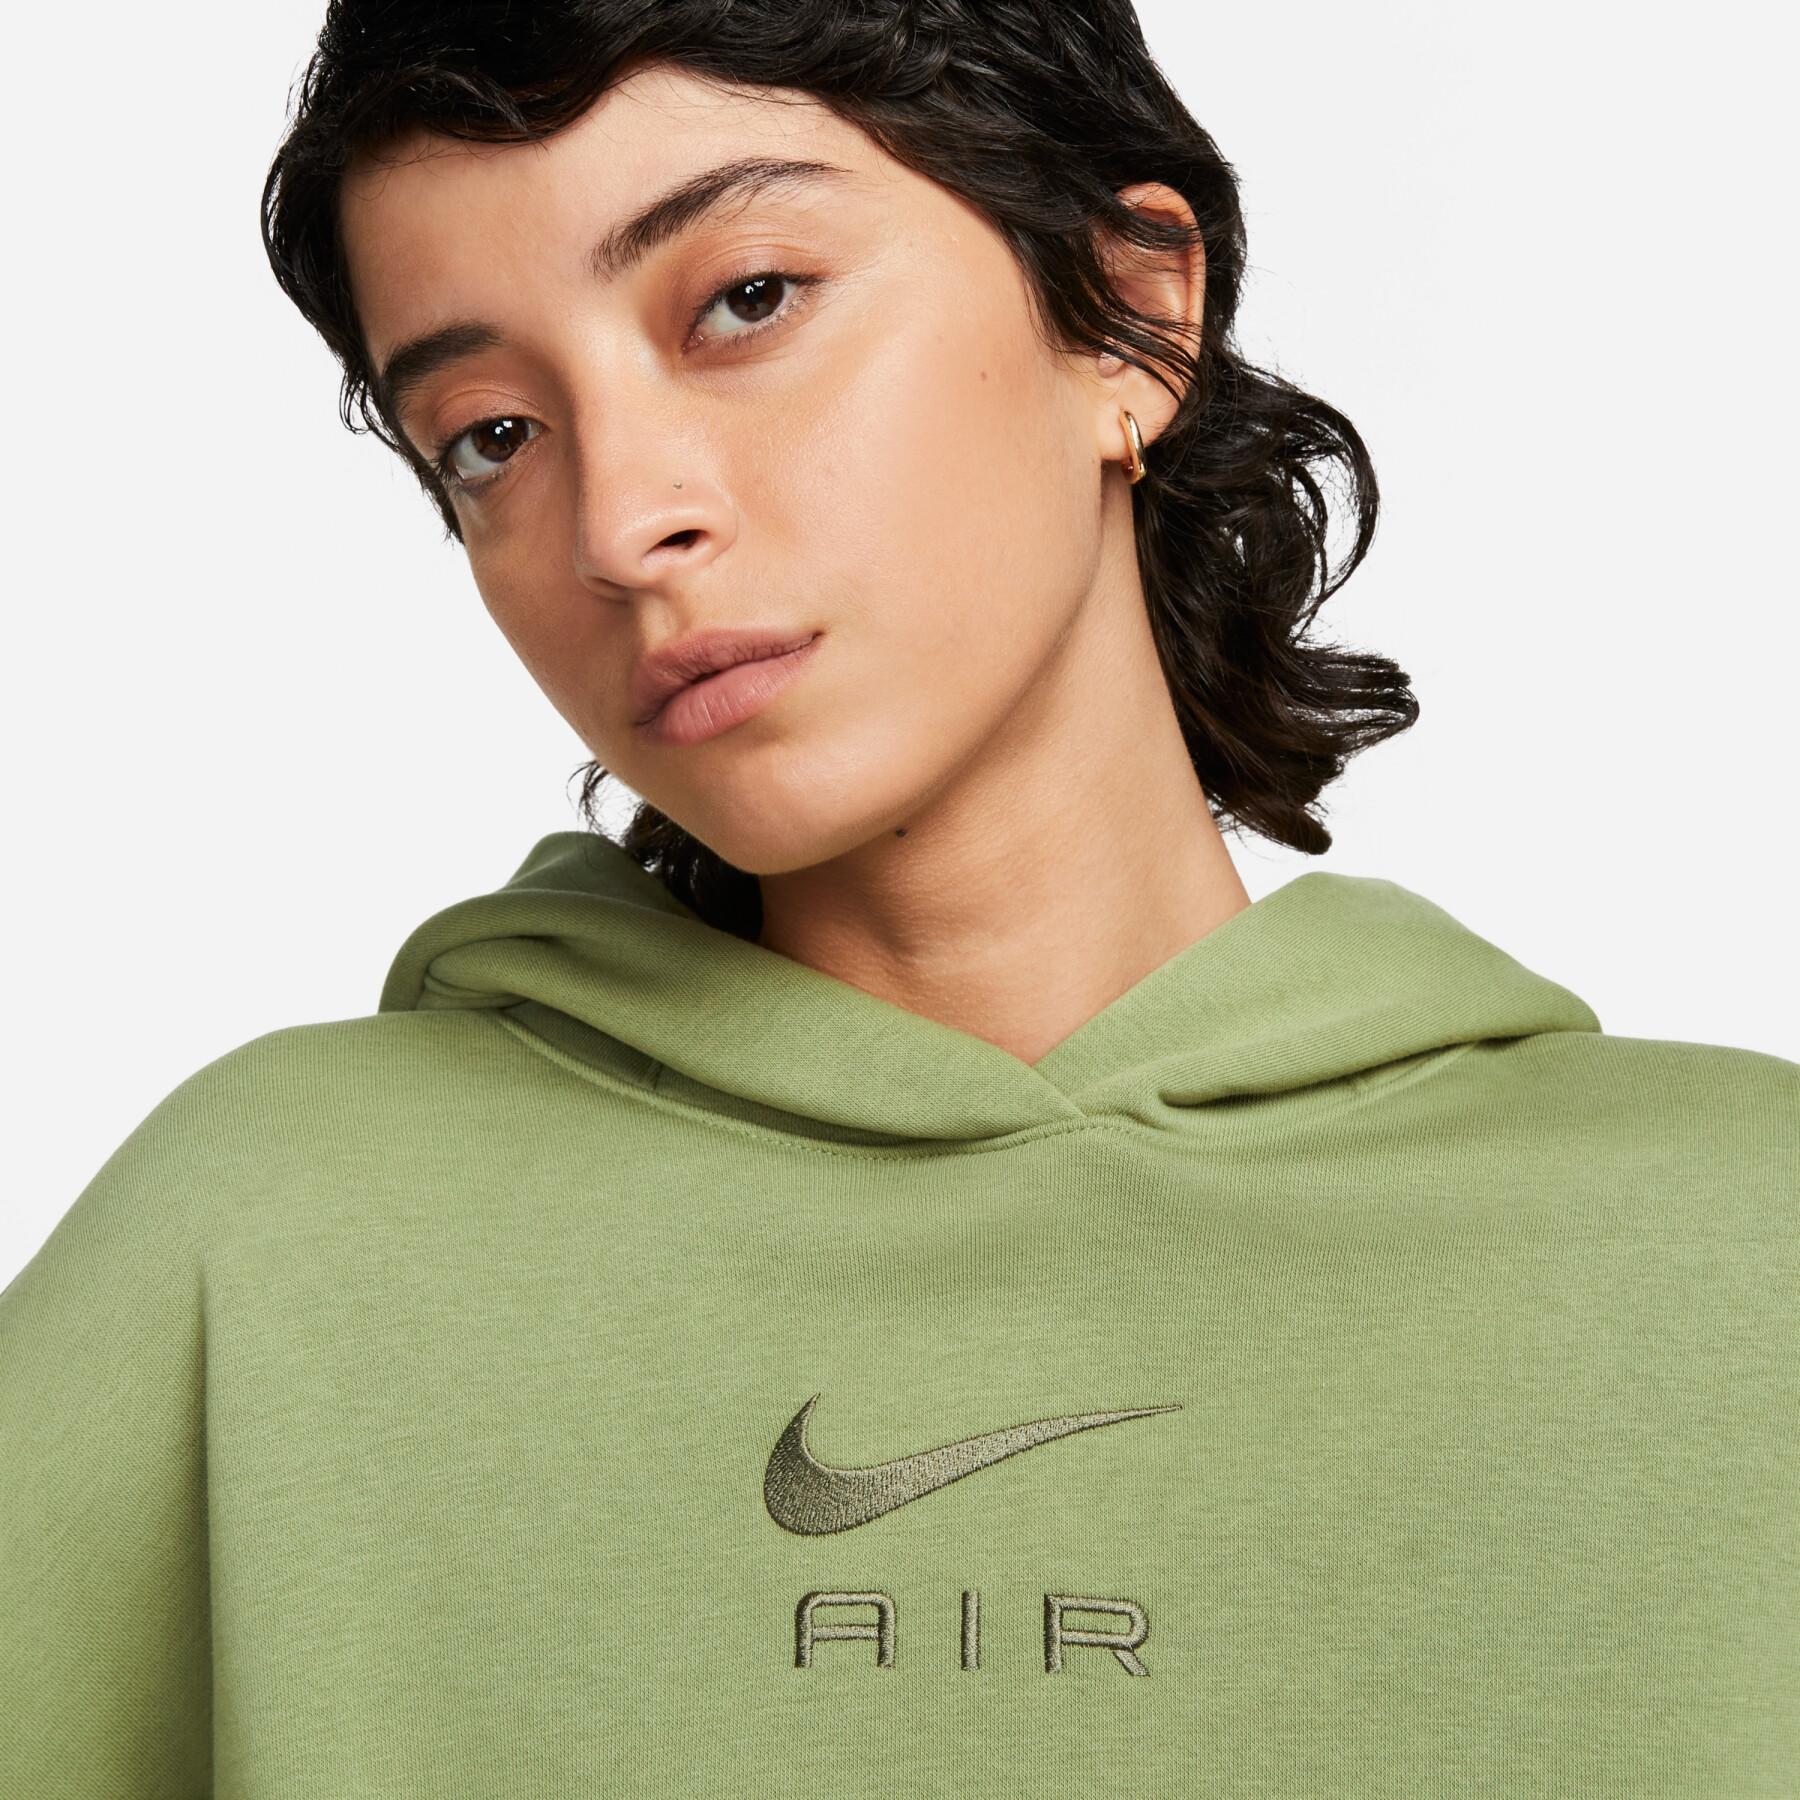 Women's fleece hooded sweatshirt Nike Sportswear Air